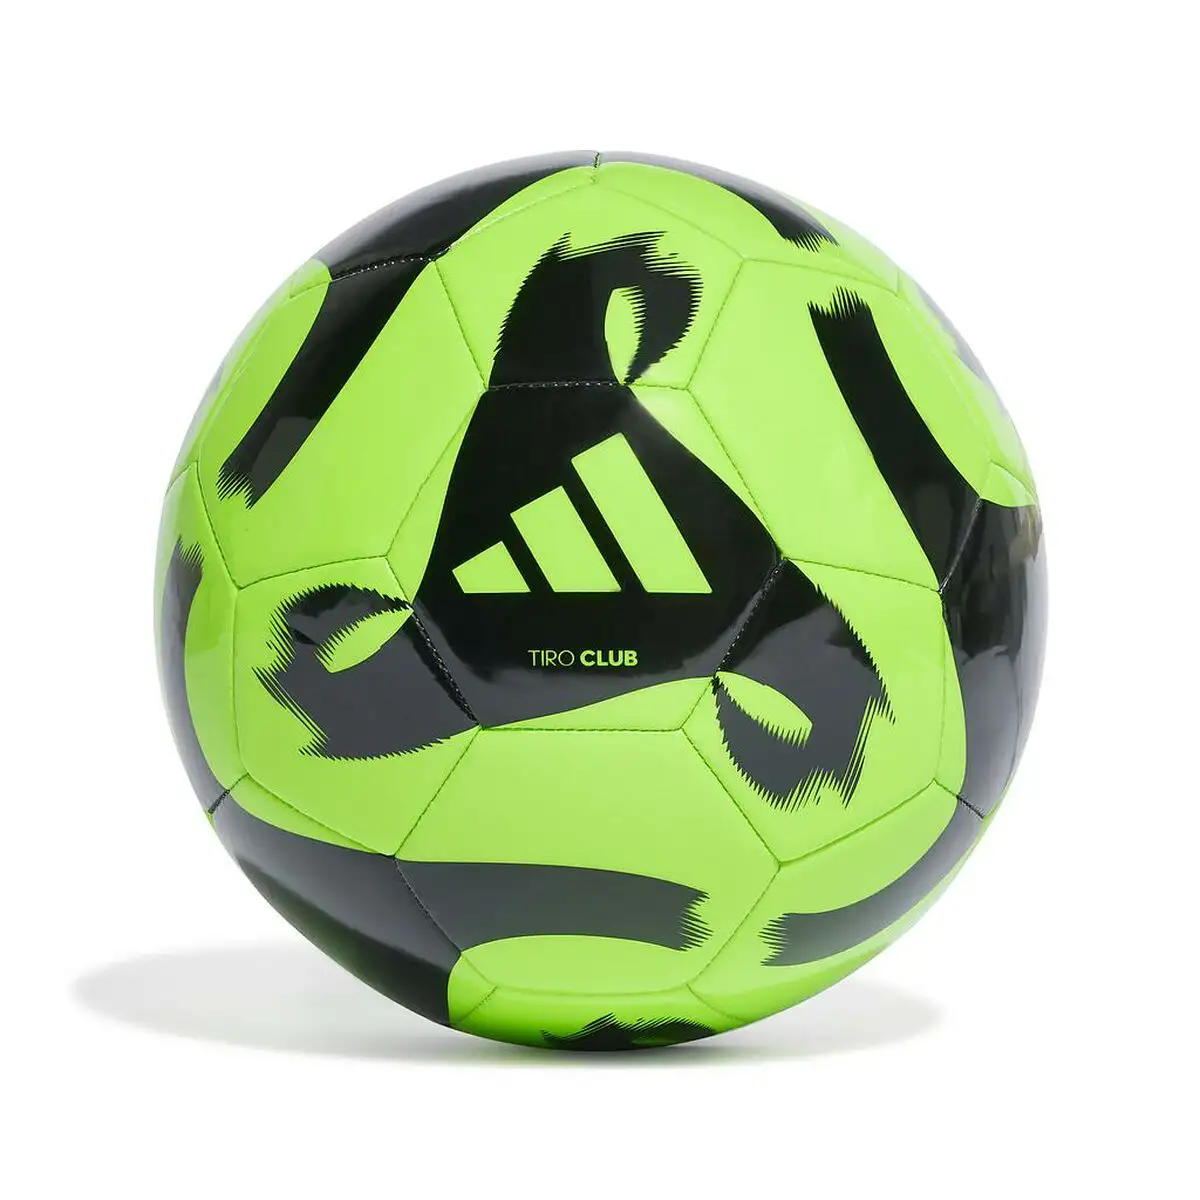 Ballon de football adidas tiro club hz4167 vert_6845. DIAYTAR SENEGAL - L'Art de Vivre en Couleurs. Découvrez notre boutique en ligne et trouvez des produits qui ajoutent une palette vibrante à votre quotidien.